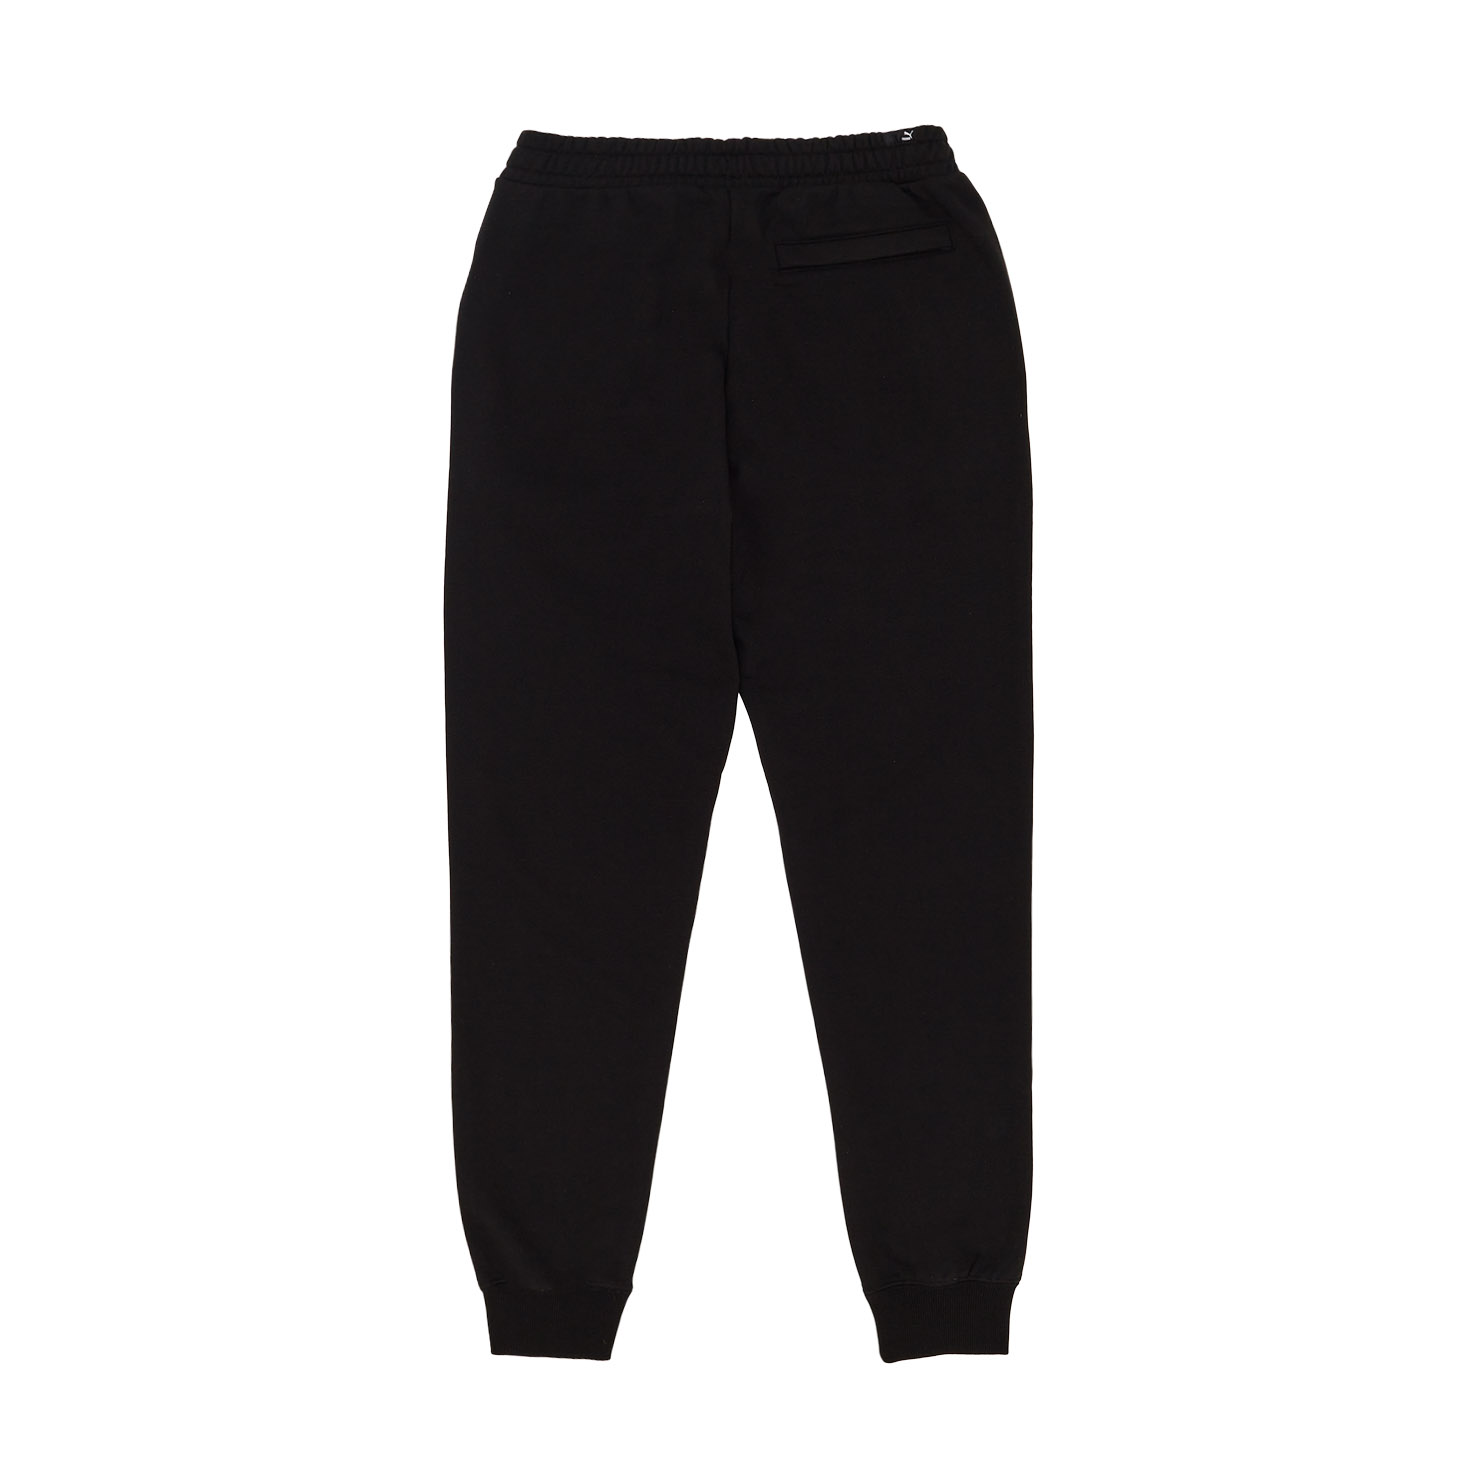 Brand Love Sweatpants PUMA, размер L, цвет черный PM533654 - фото 2